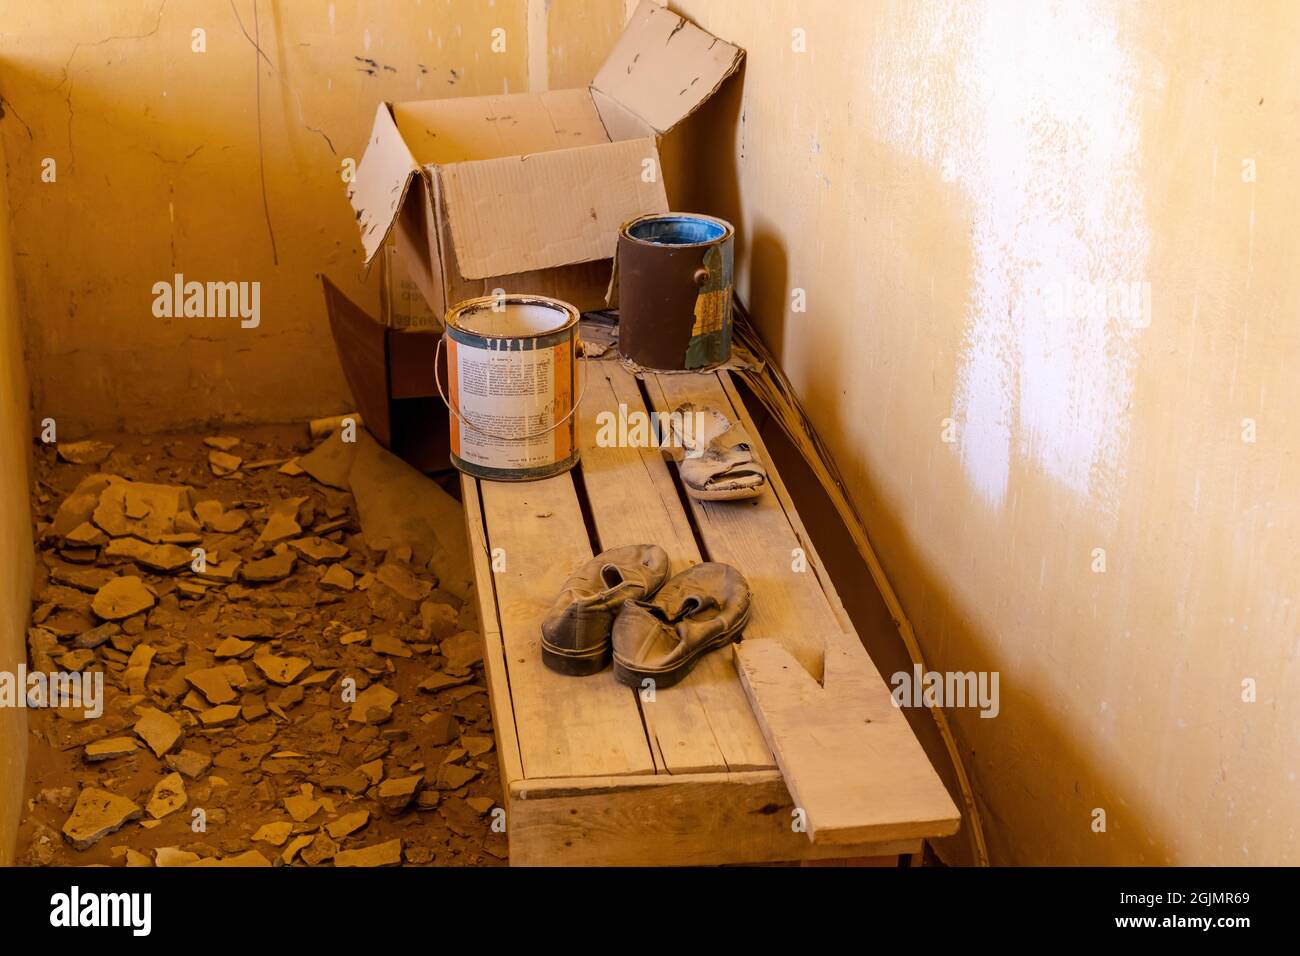 Lattine con vernice, scatola di cartone, e scarpe vecchie sul banco di legno nella casa abbandonata Foto Stock